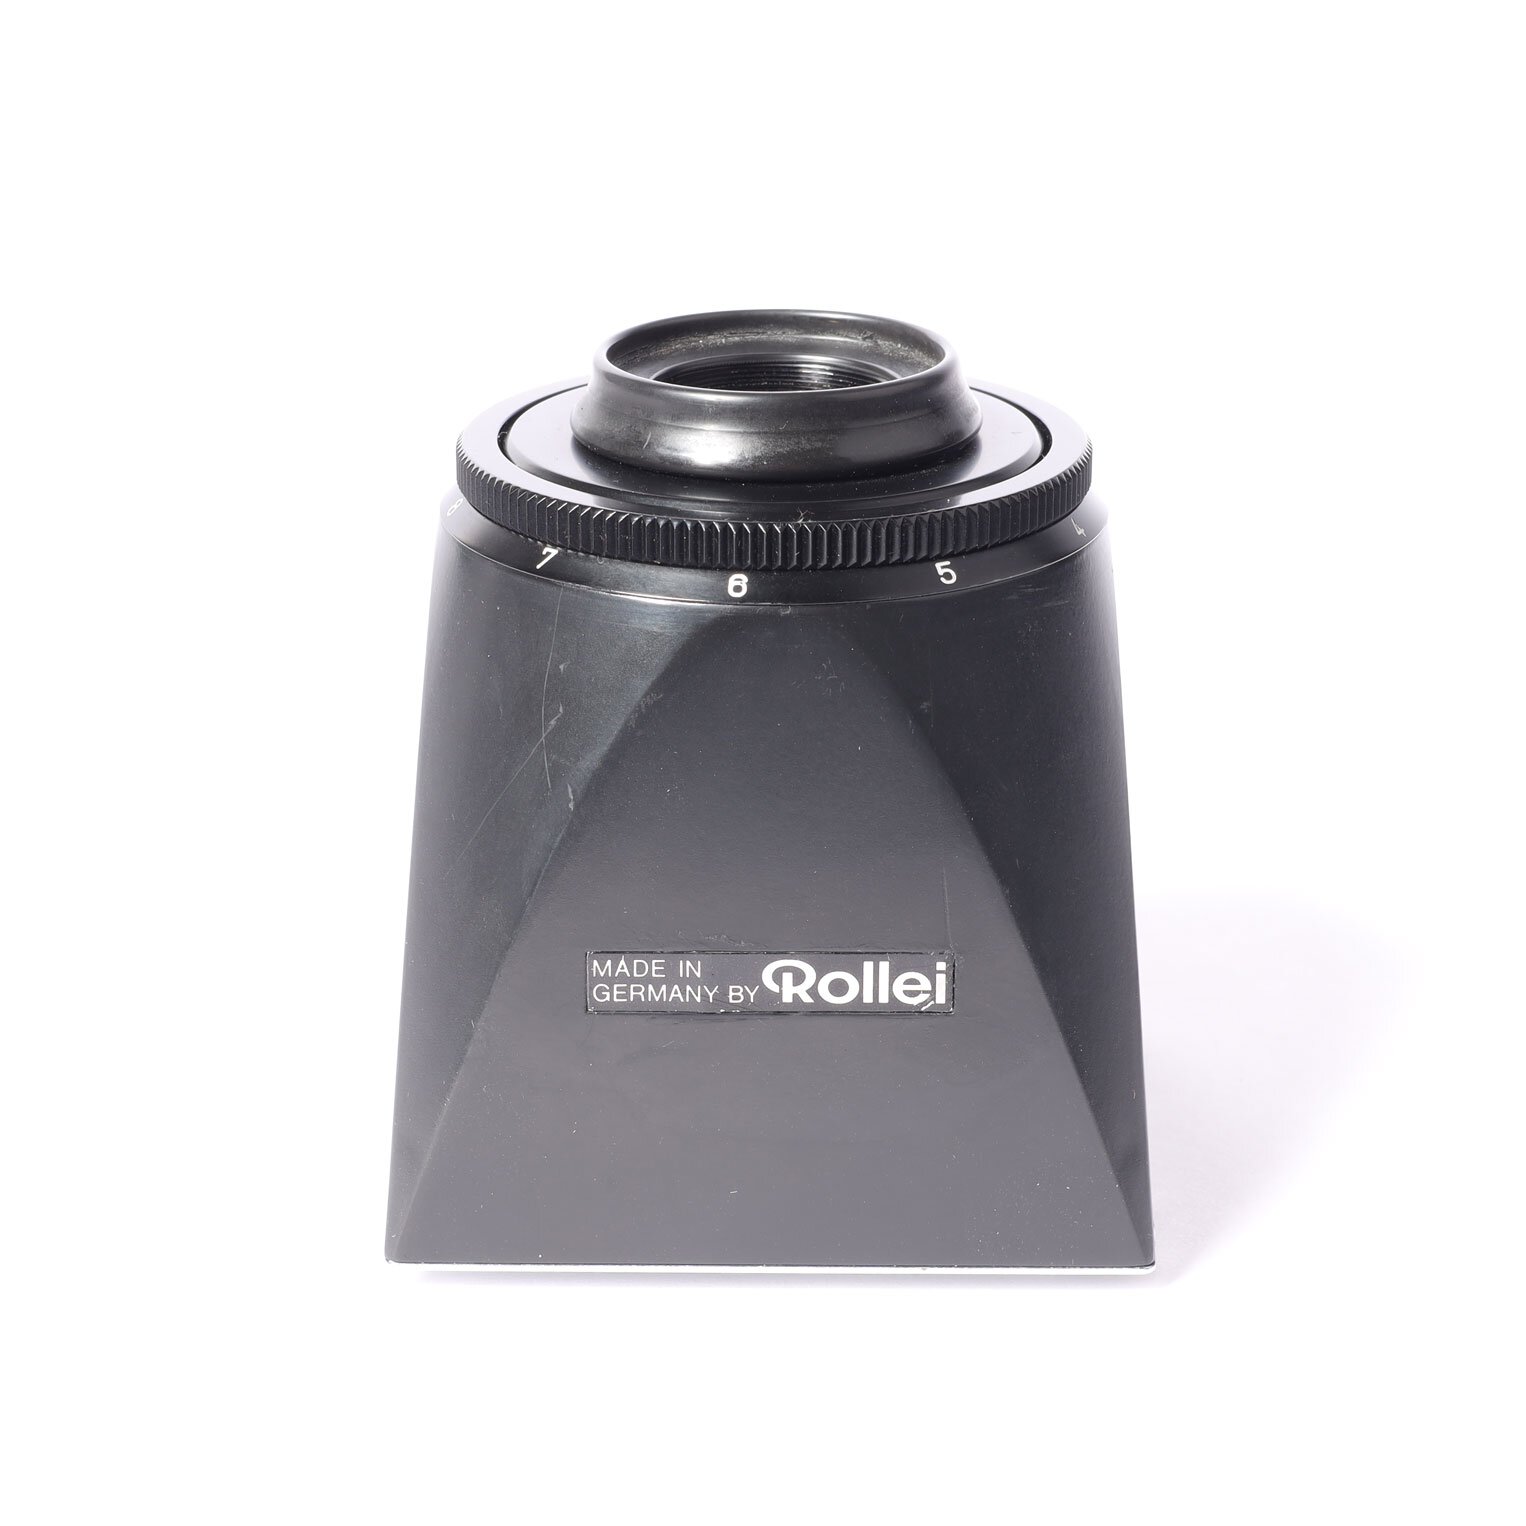 Rolleiflex SL66 Lupensucher